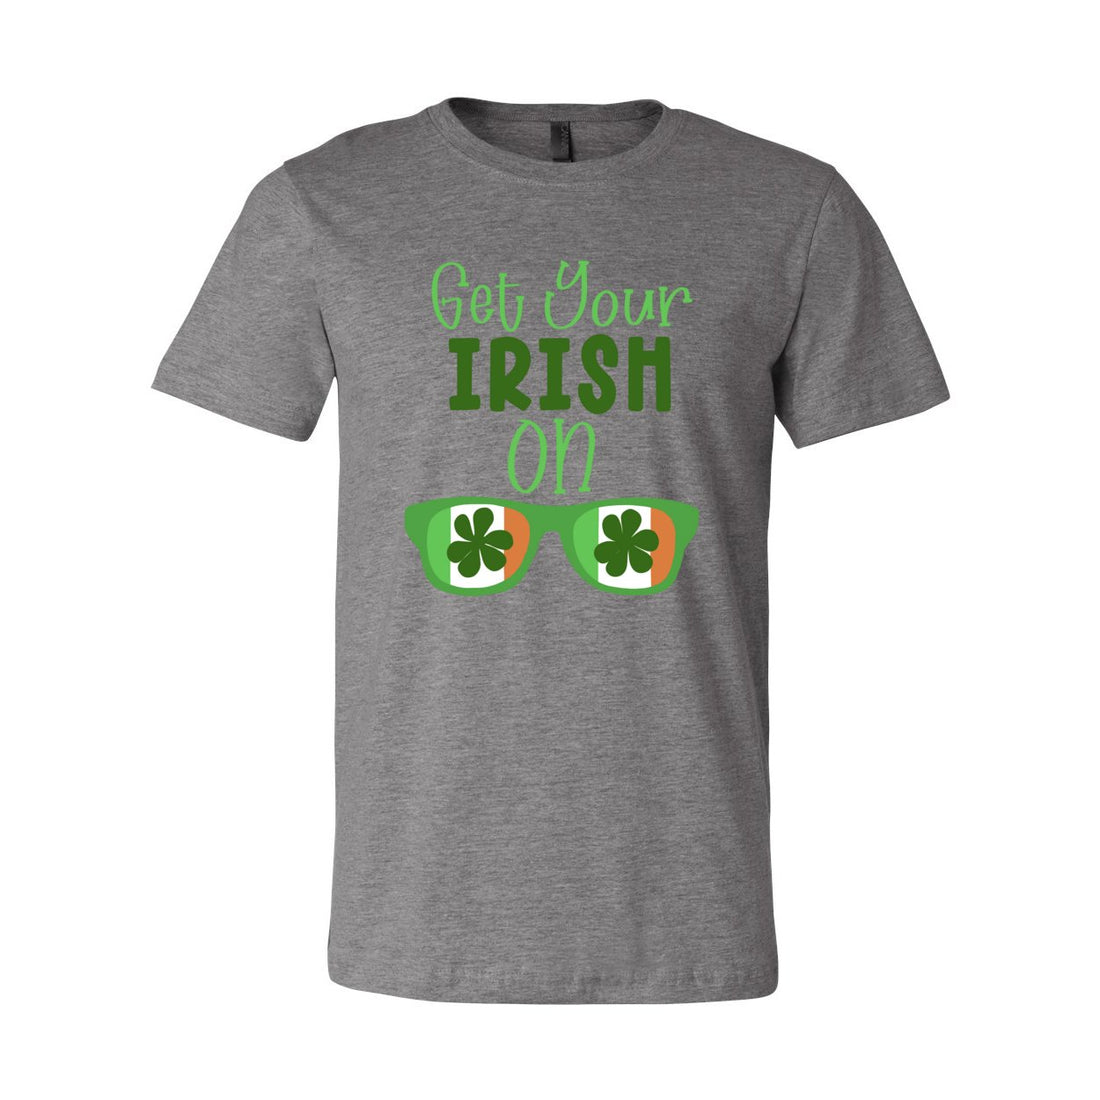 Irish On Short Sleeve Jersey Tee - T-Shirts - Positively Sassy - Irish On Short Sleeve Jersey Tee